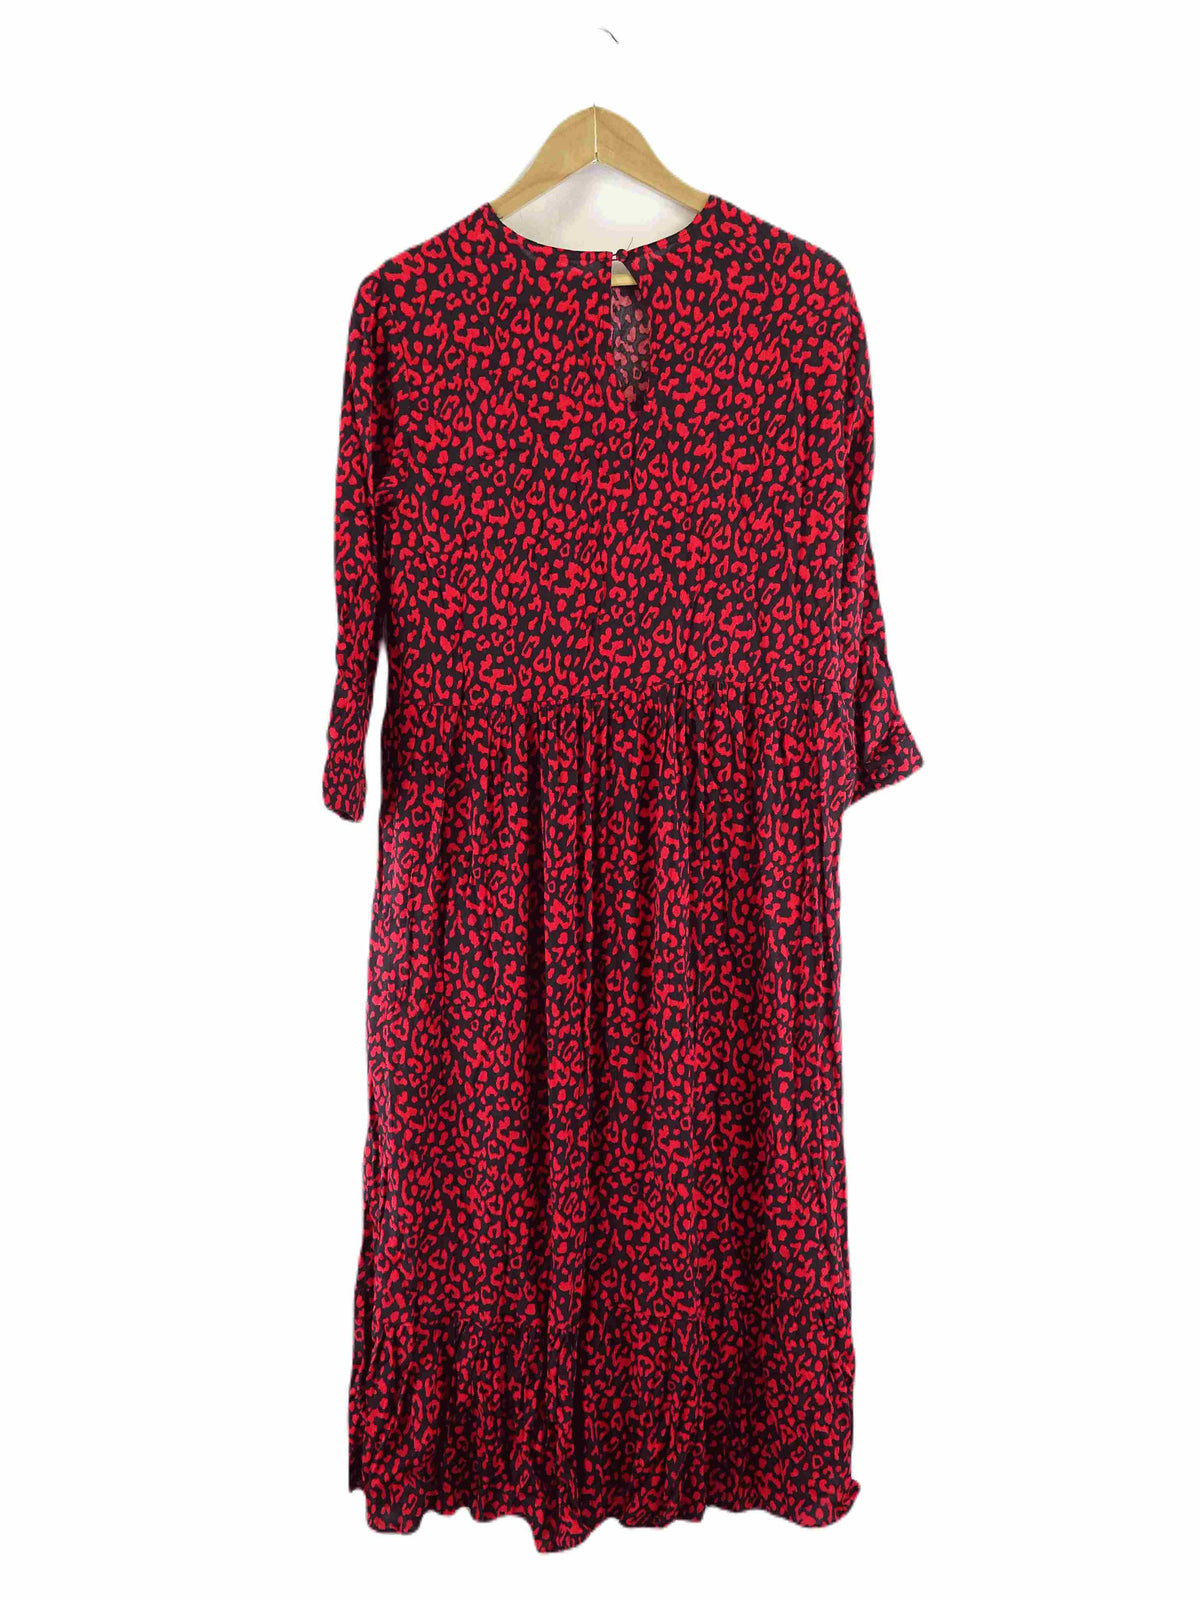 Zara Black and Red Leopard Print Maxi Dress M